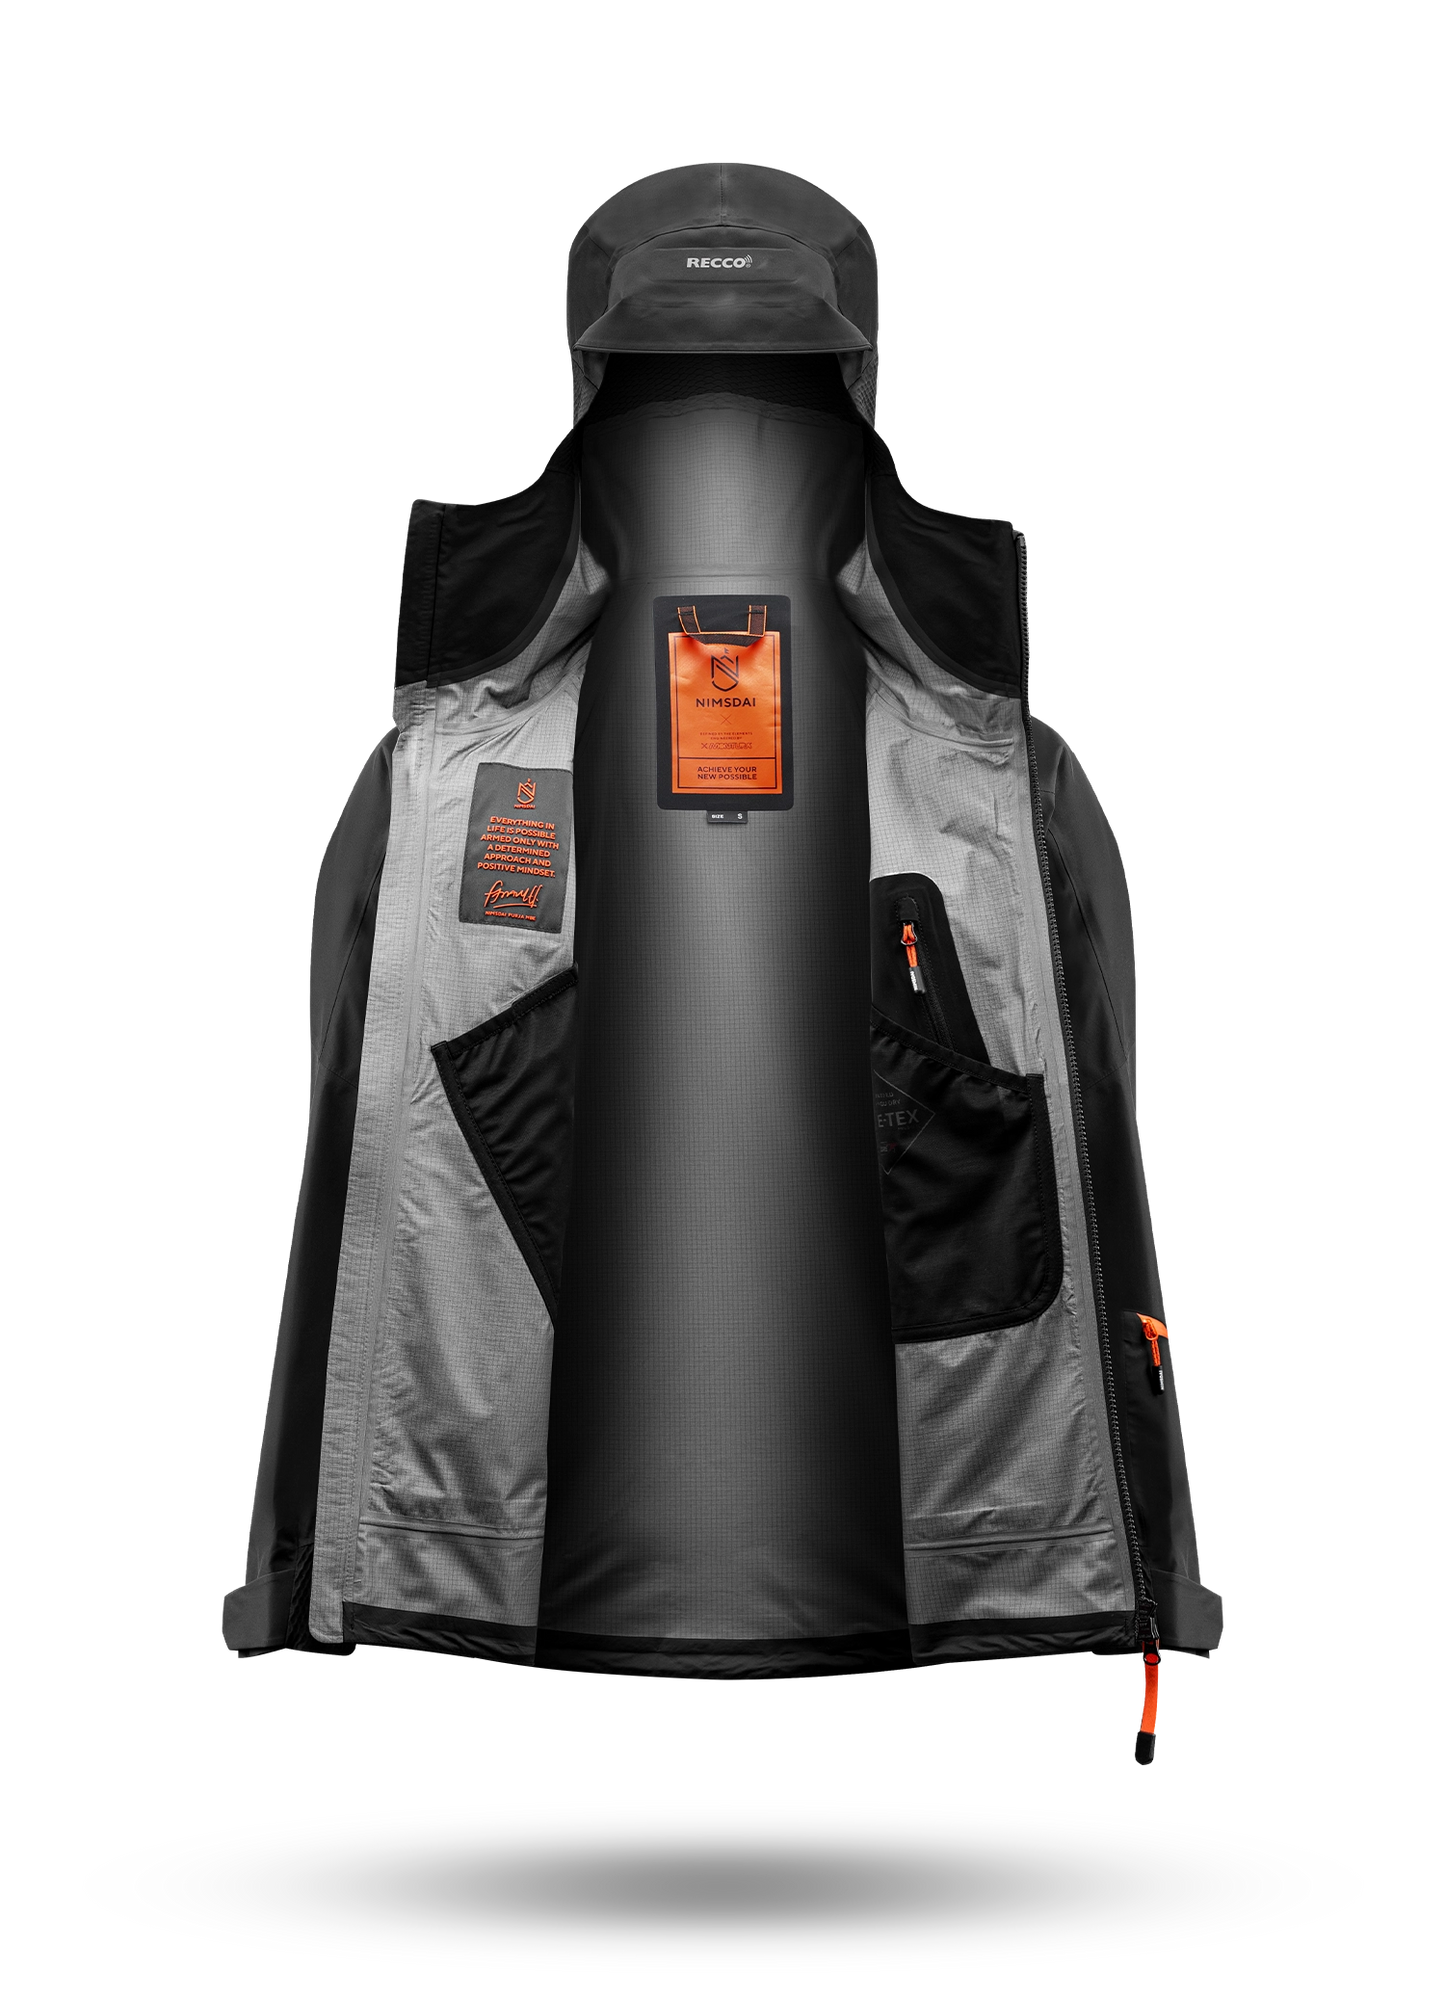 K2 Winter Waterproof Jacket